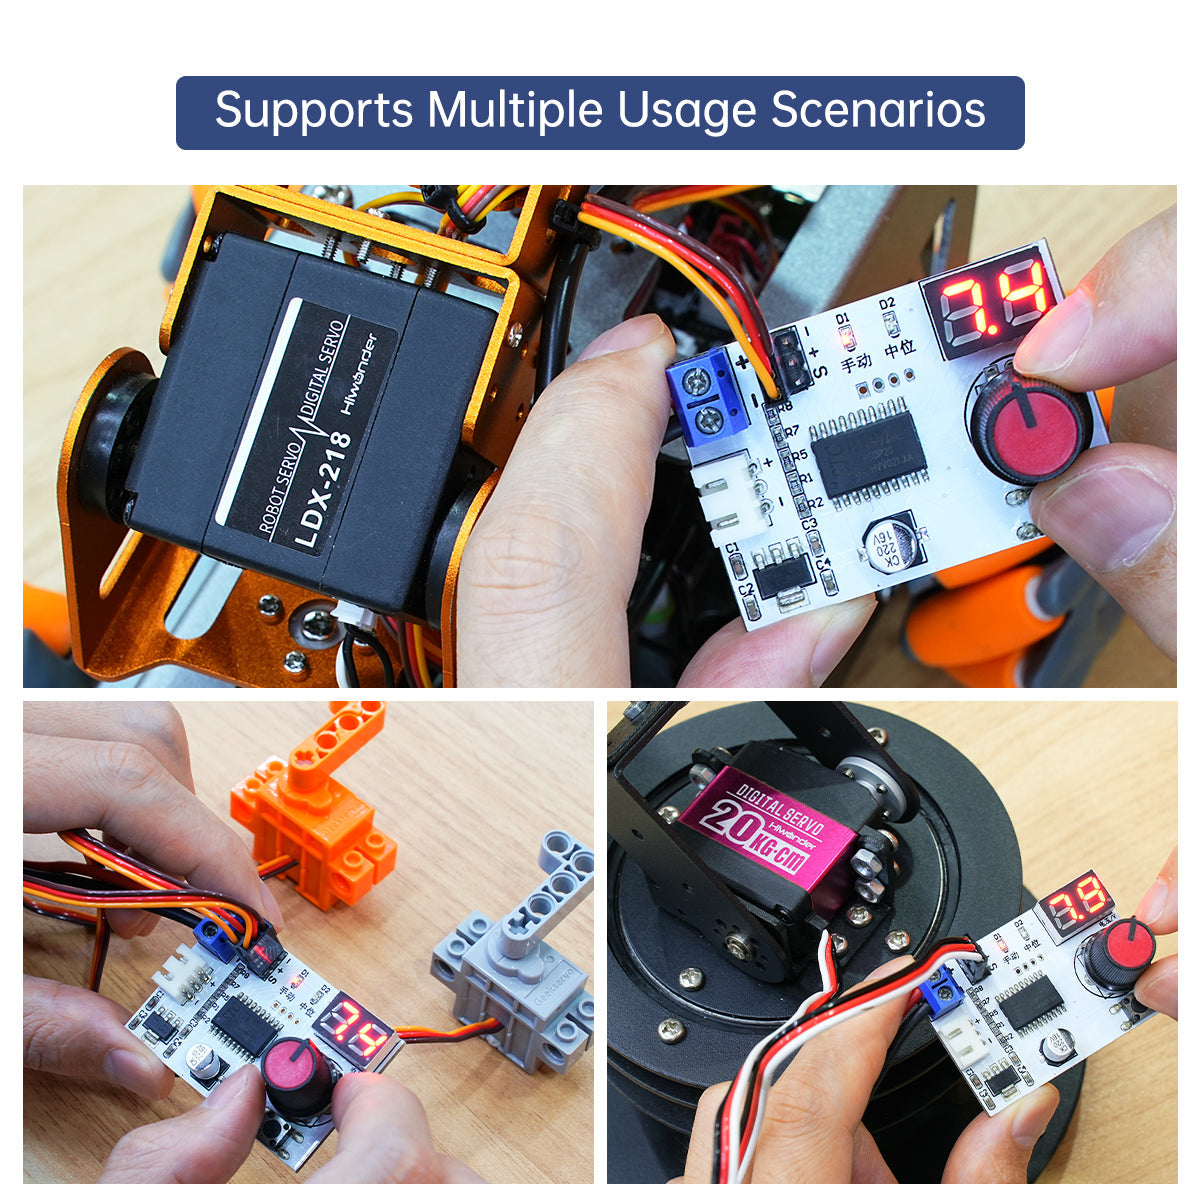 Hiwonder Digital Servo Tester Controller with Voltage Display